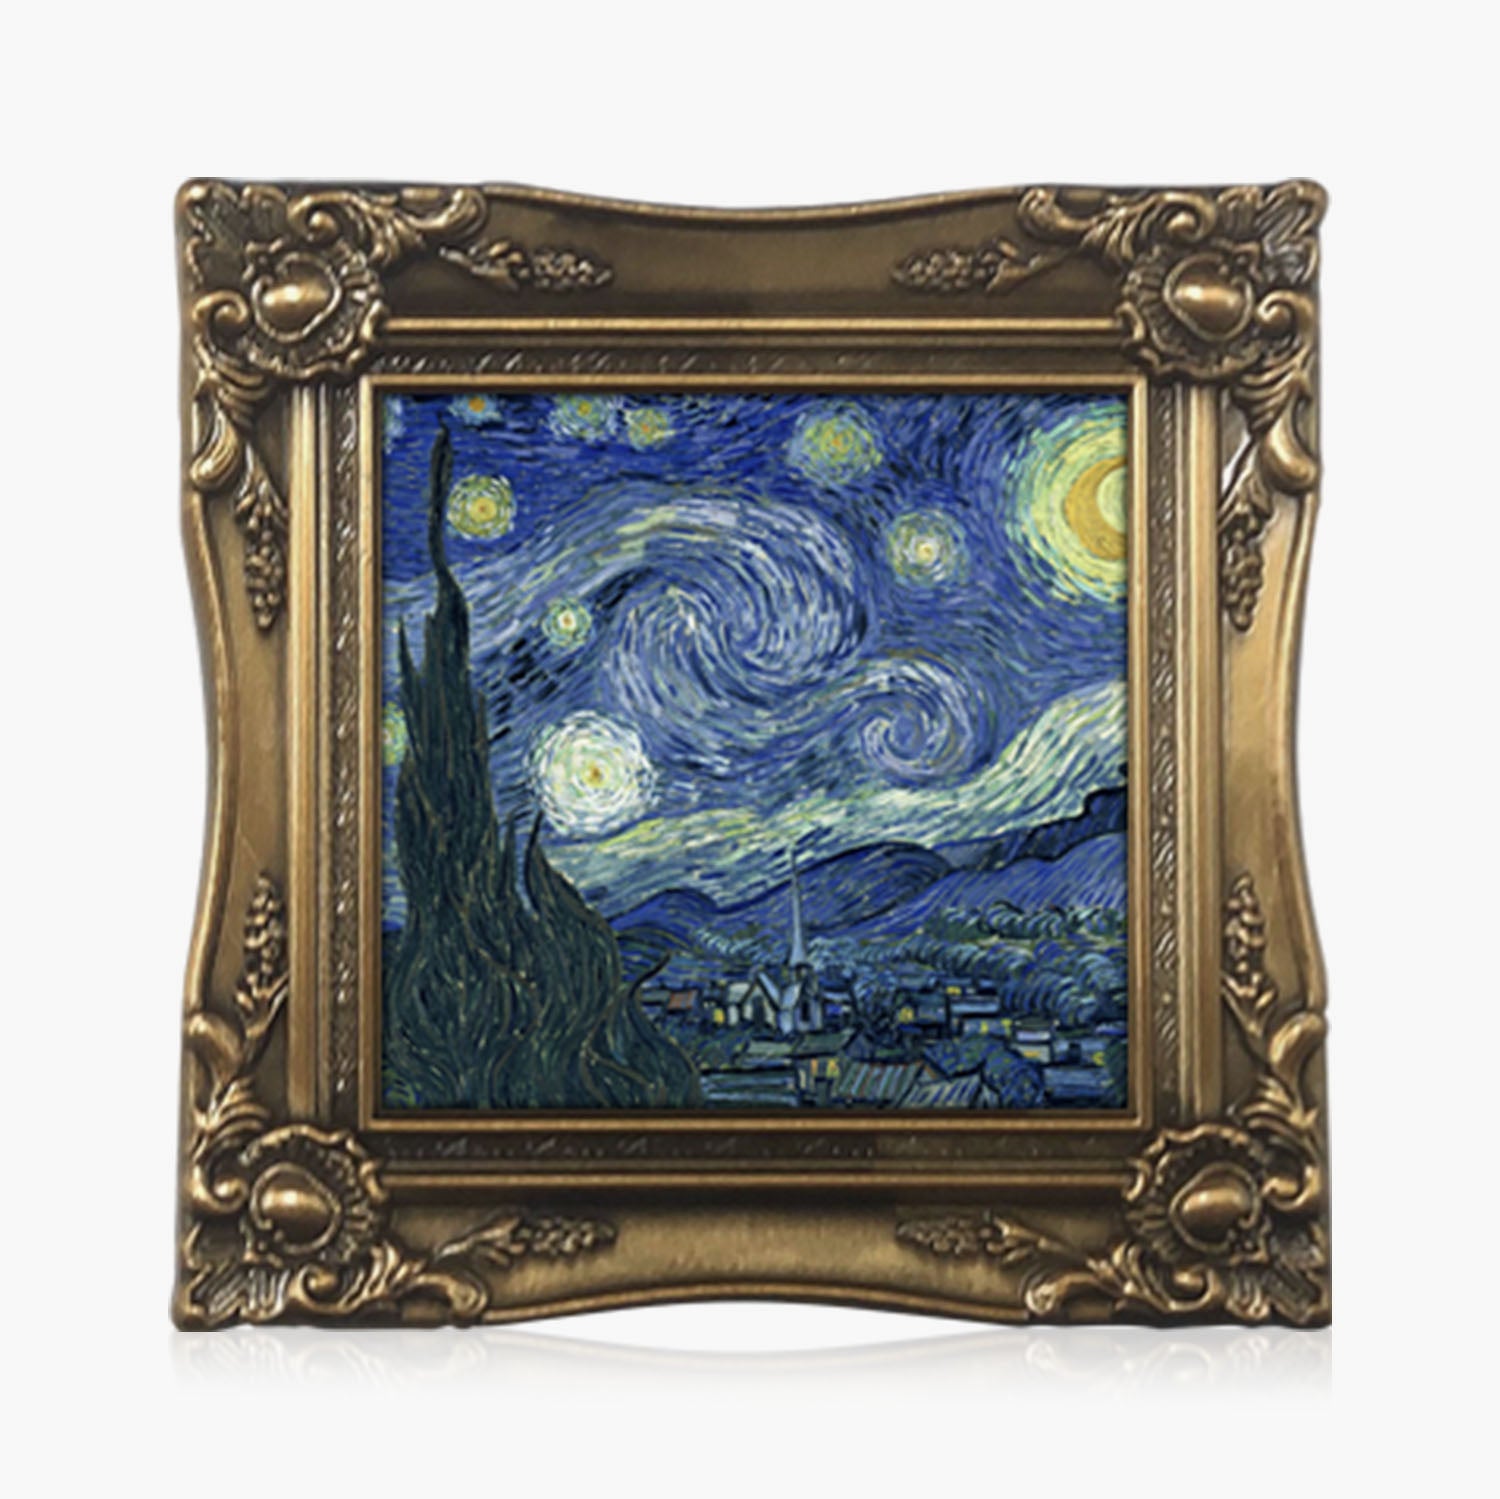 Les peintures les plus célèbres - Van Gogh - Nuit étoilée